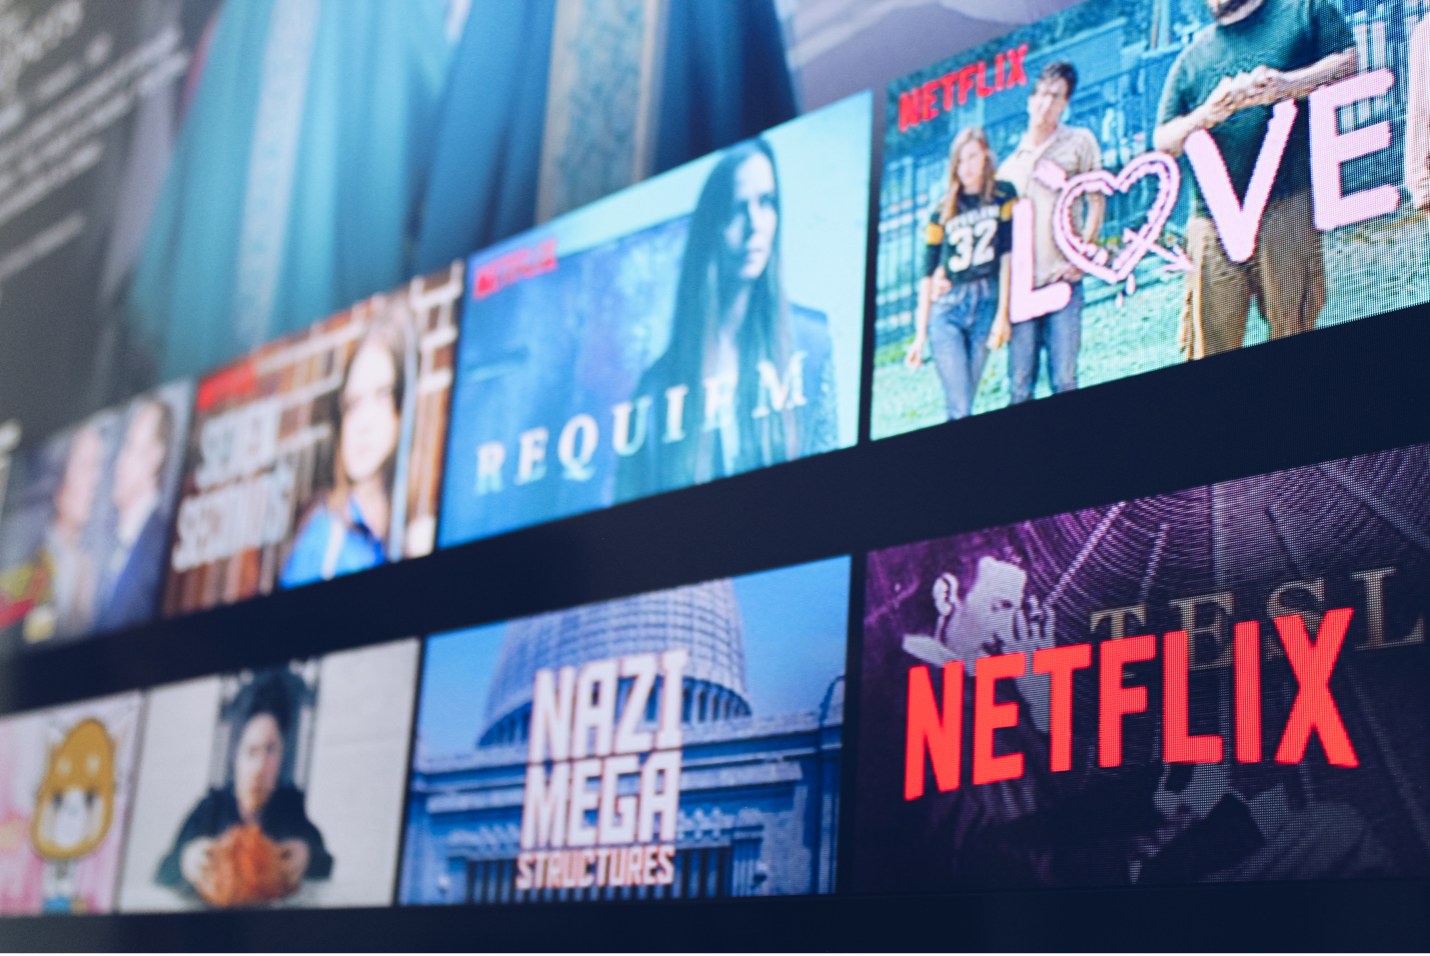 Netflix interface showing Netflix originals and other titles